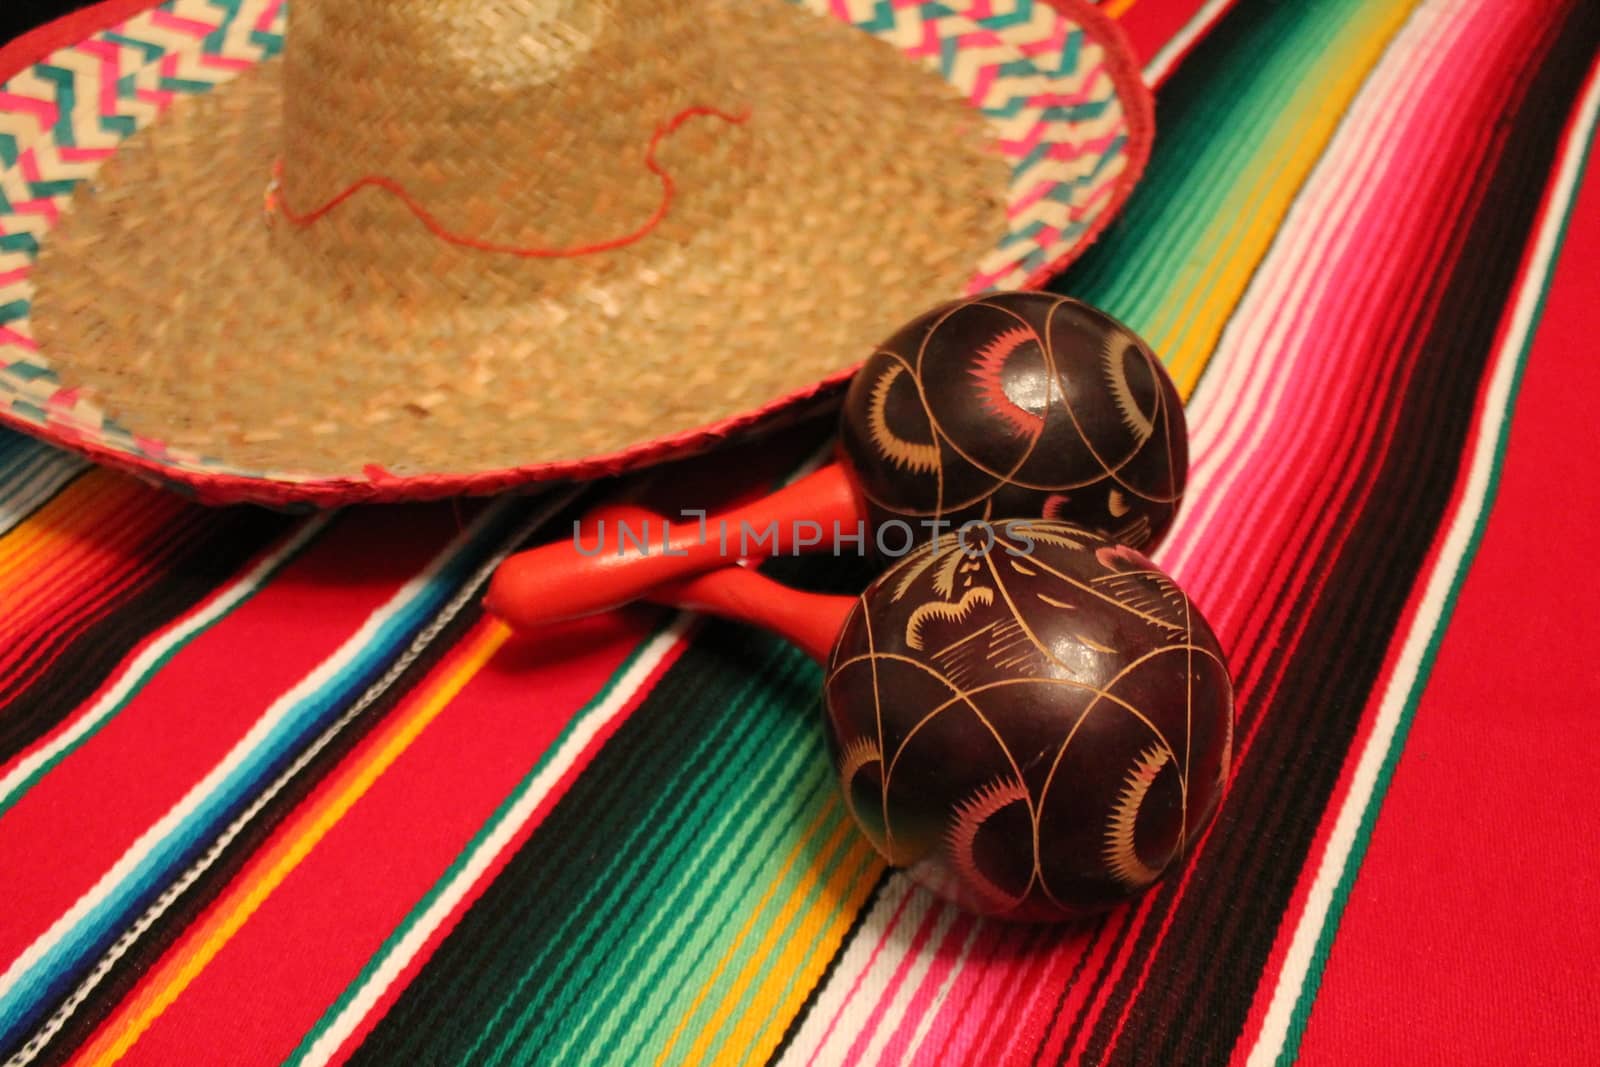 Mexico poncho sombrero maracas background fiesta cinco de mayo decoration bunting  by cheekylorns